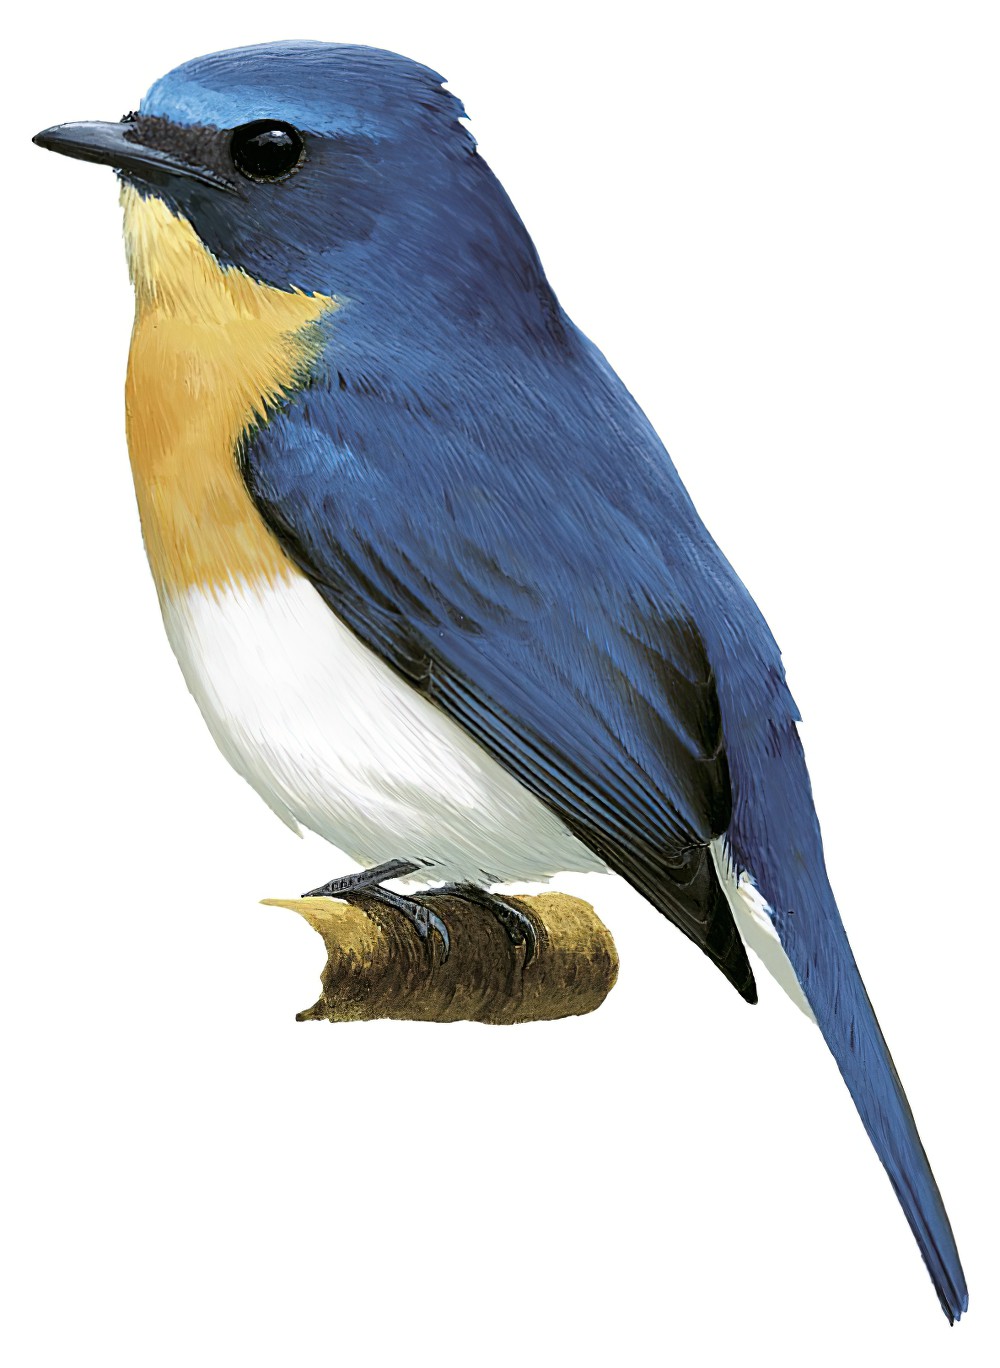 Indochinese Blue Flycatcher / Cyornis sumatrensis